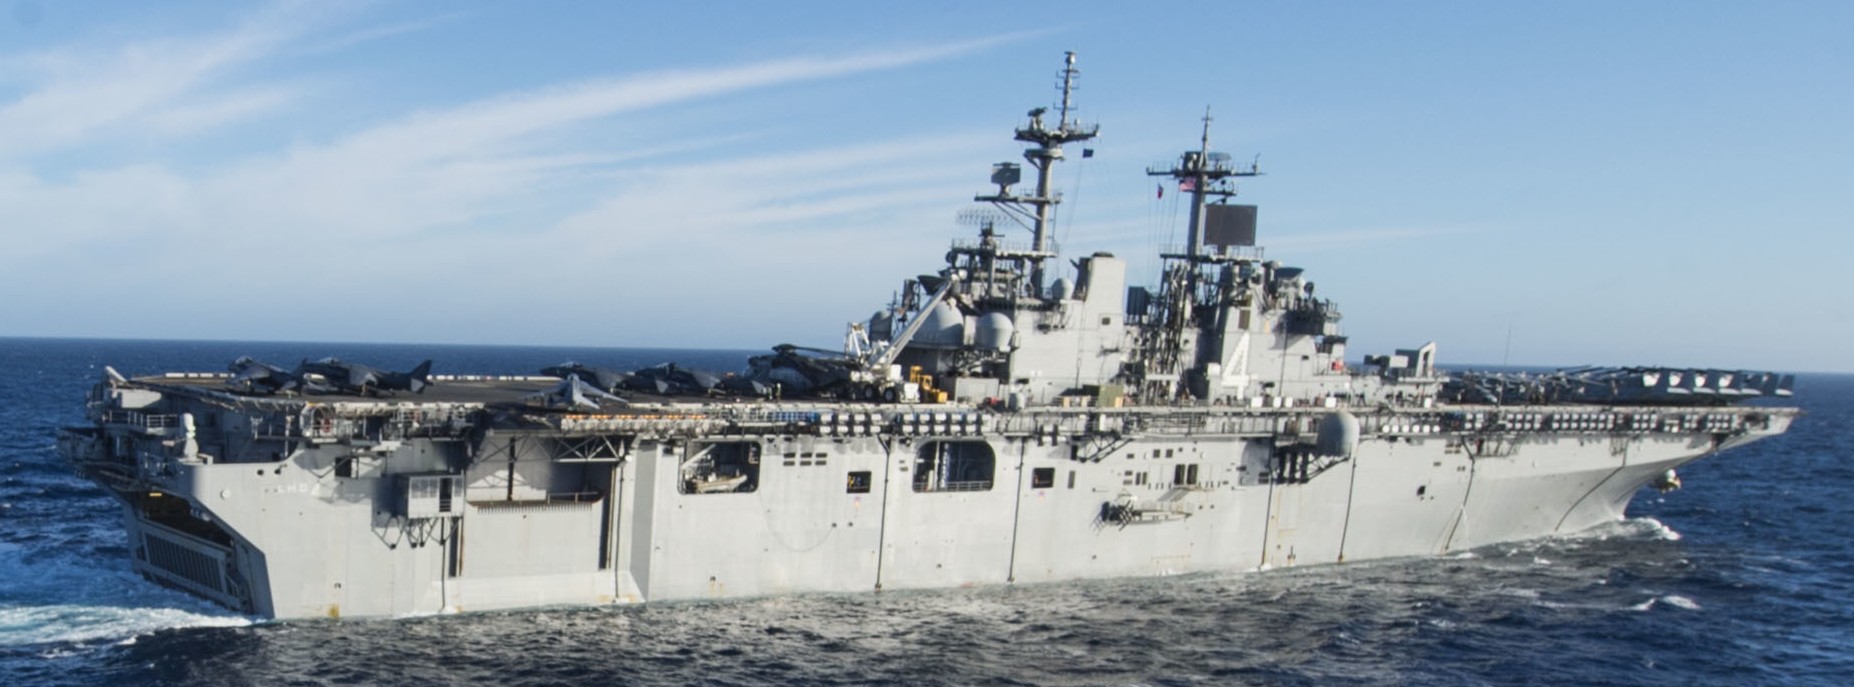 lhd-4 uss boxer wasp class amphibious assault ship dock landing us navy marines vmm-166 103